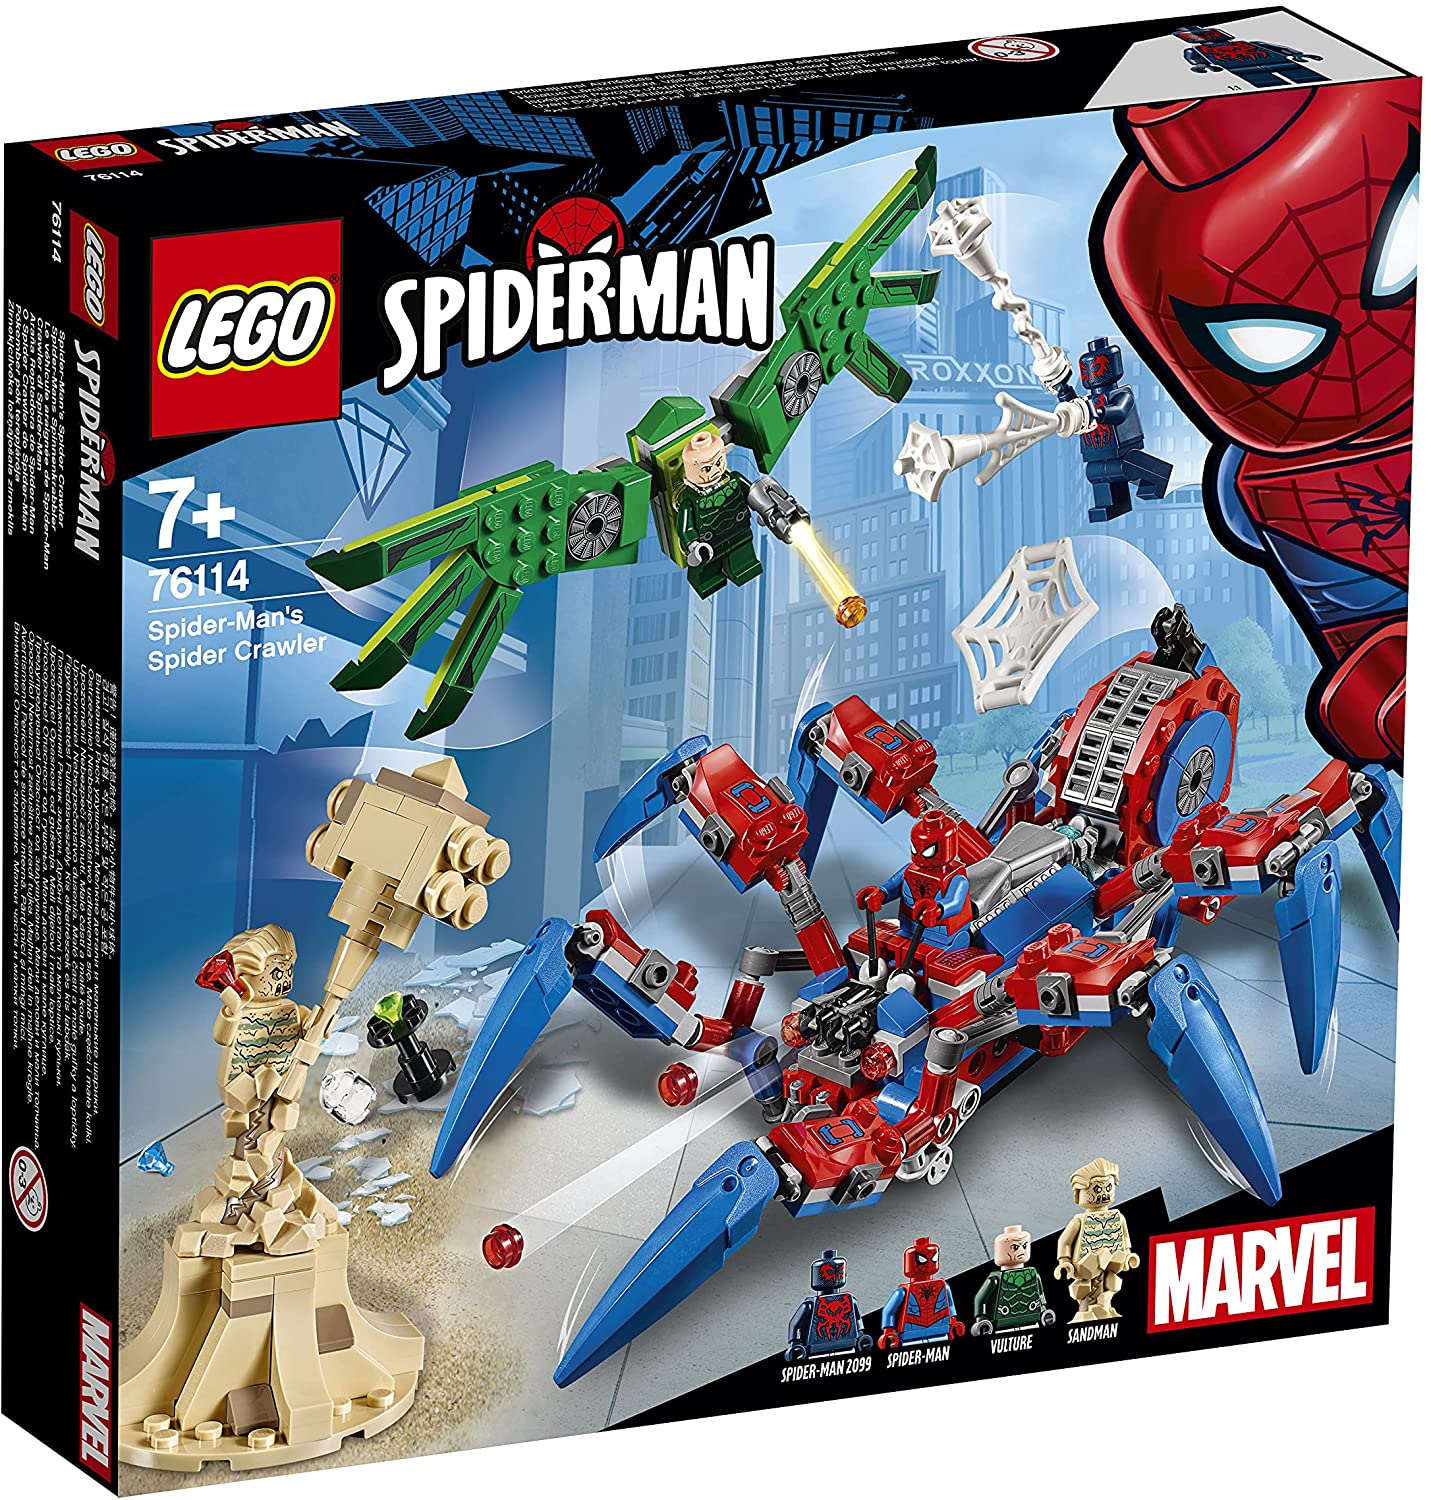 【折300+10%回饋】LEGO 樂高 超級英雄系列 蜘蛛俠蜘蛛俠蜘蛛俠 76114 積木玩具 男孩